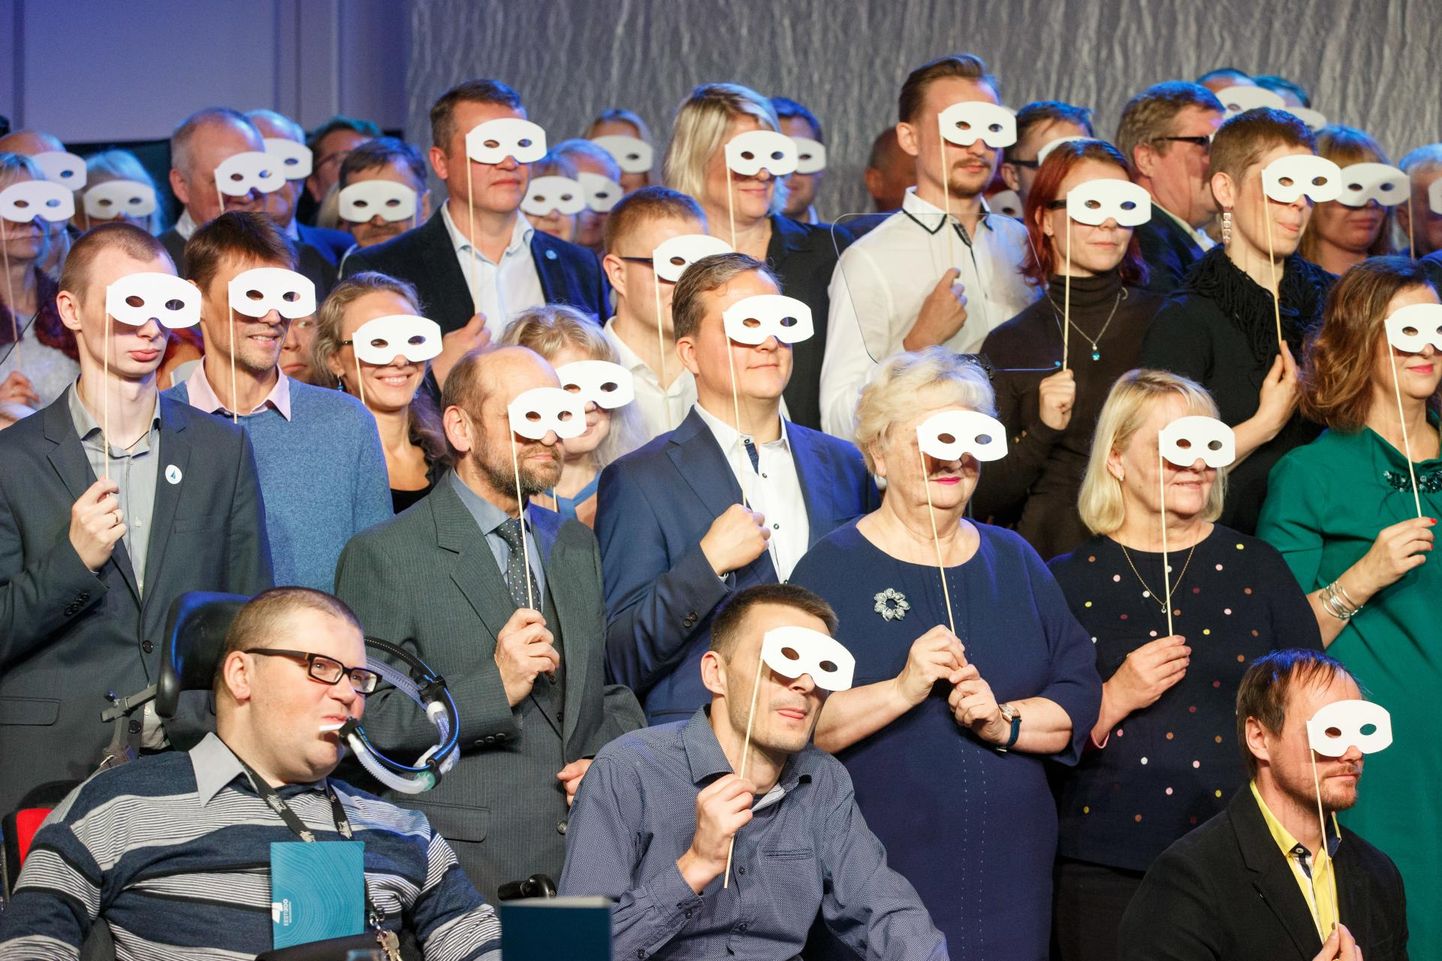 Eesti 200 parteiks saamise üldkogul novembris peitsid erakonna liikmed end maskide taha. Kaks kuud enne valimisi on suuresti veel varjatud ka riigikokku kandideerijad. FOTO: Tiina Kõrtsini/Õhtuleht